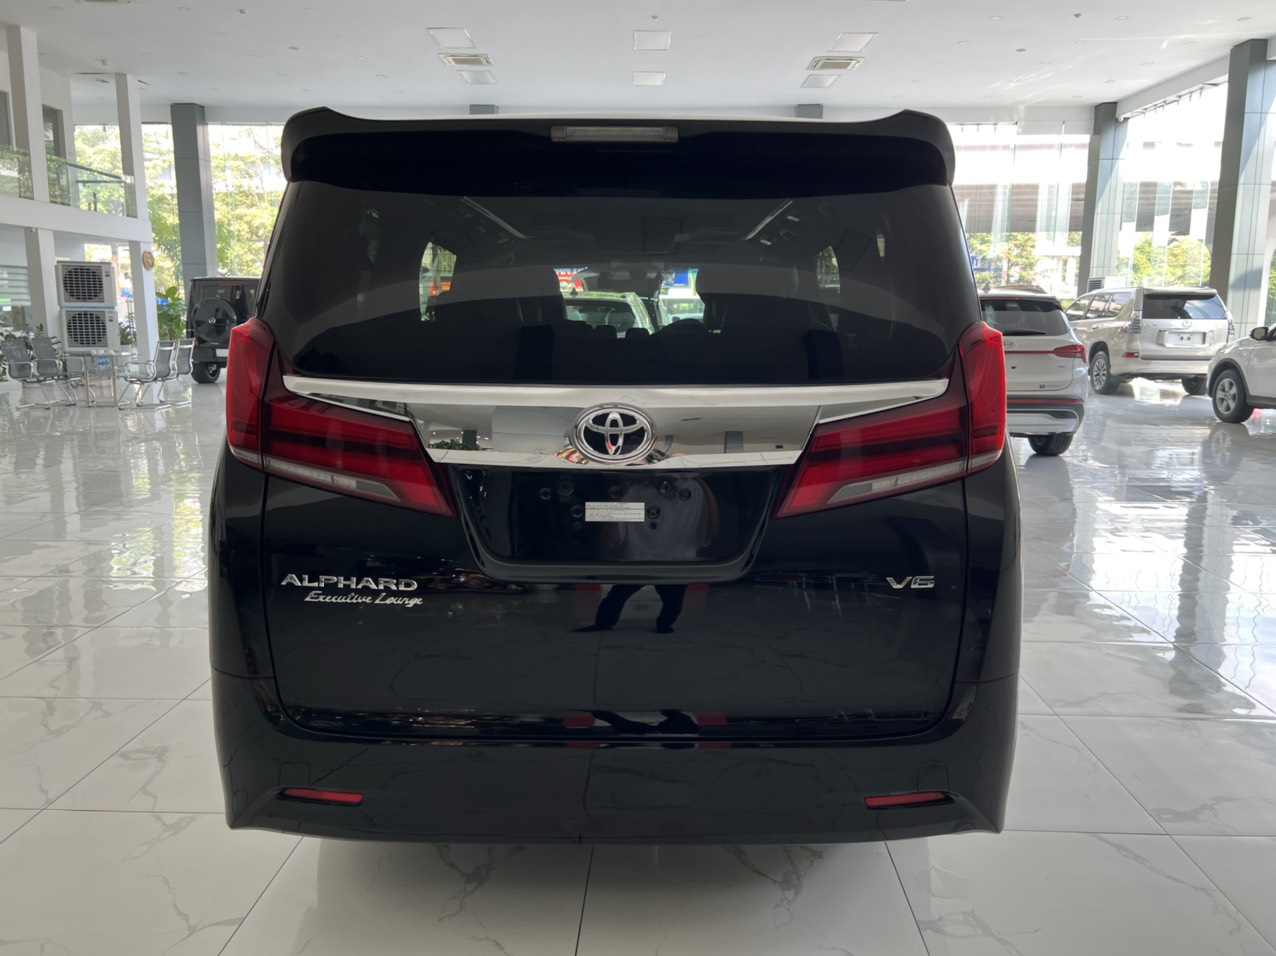 Bán Toyota Alphard Executive Lounge sản xuất 2018, màu đen, xe nhập khẩu sơn zin lốp theo xe -3